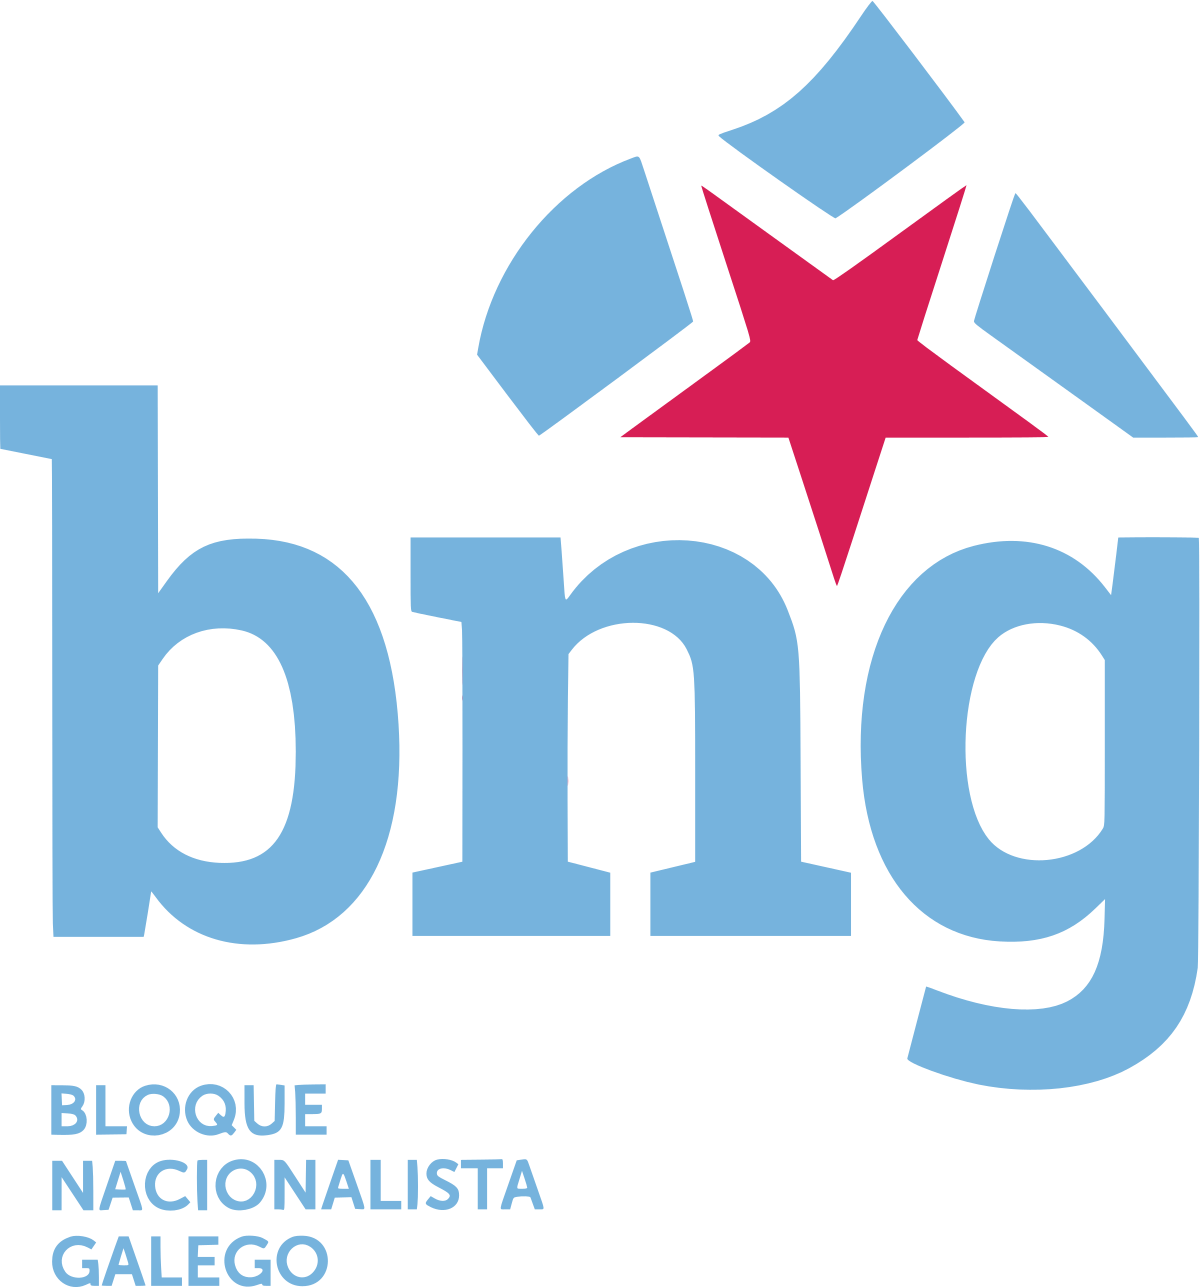 Bloque Nacionalista Galego